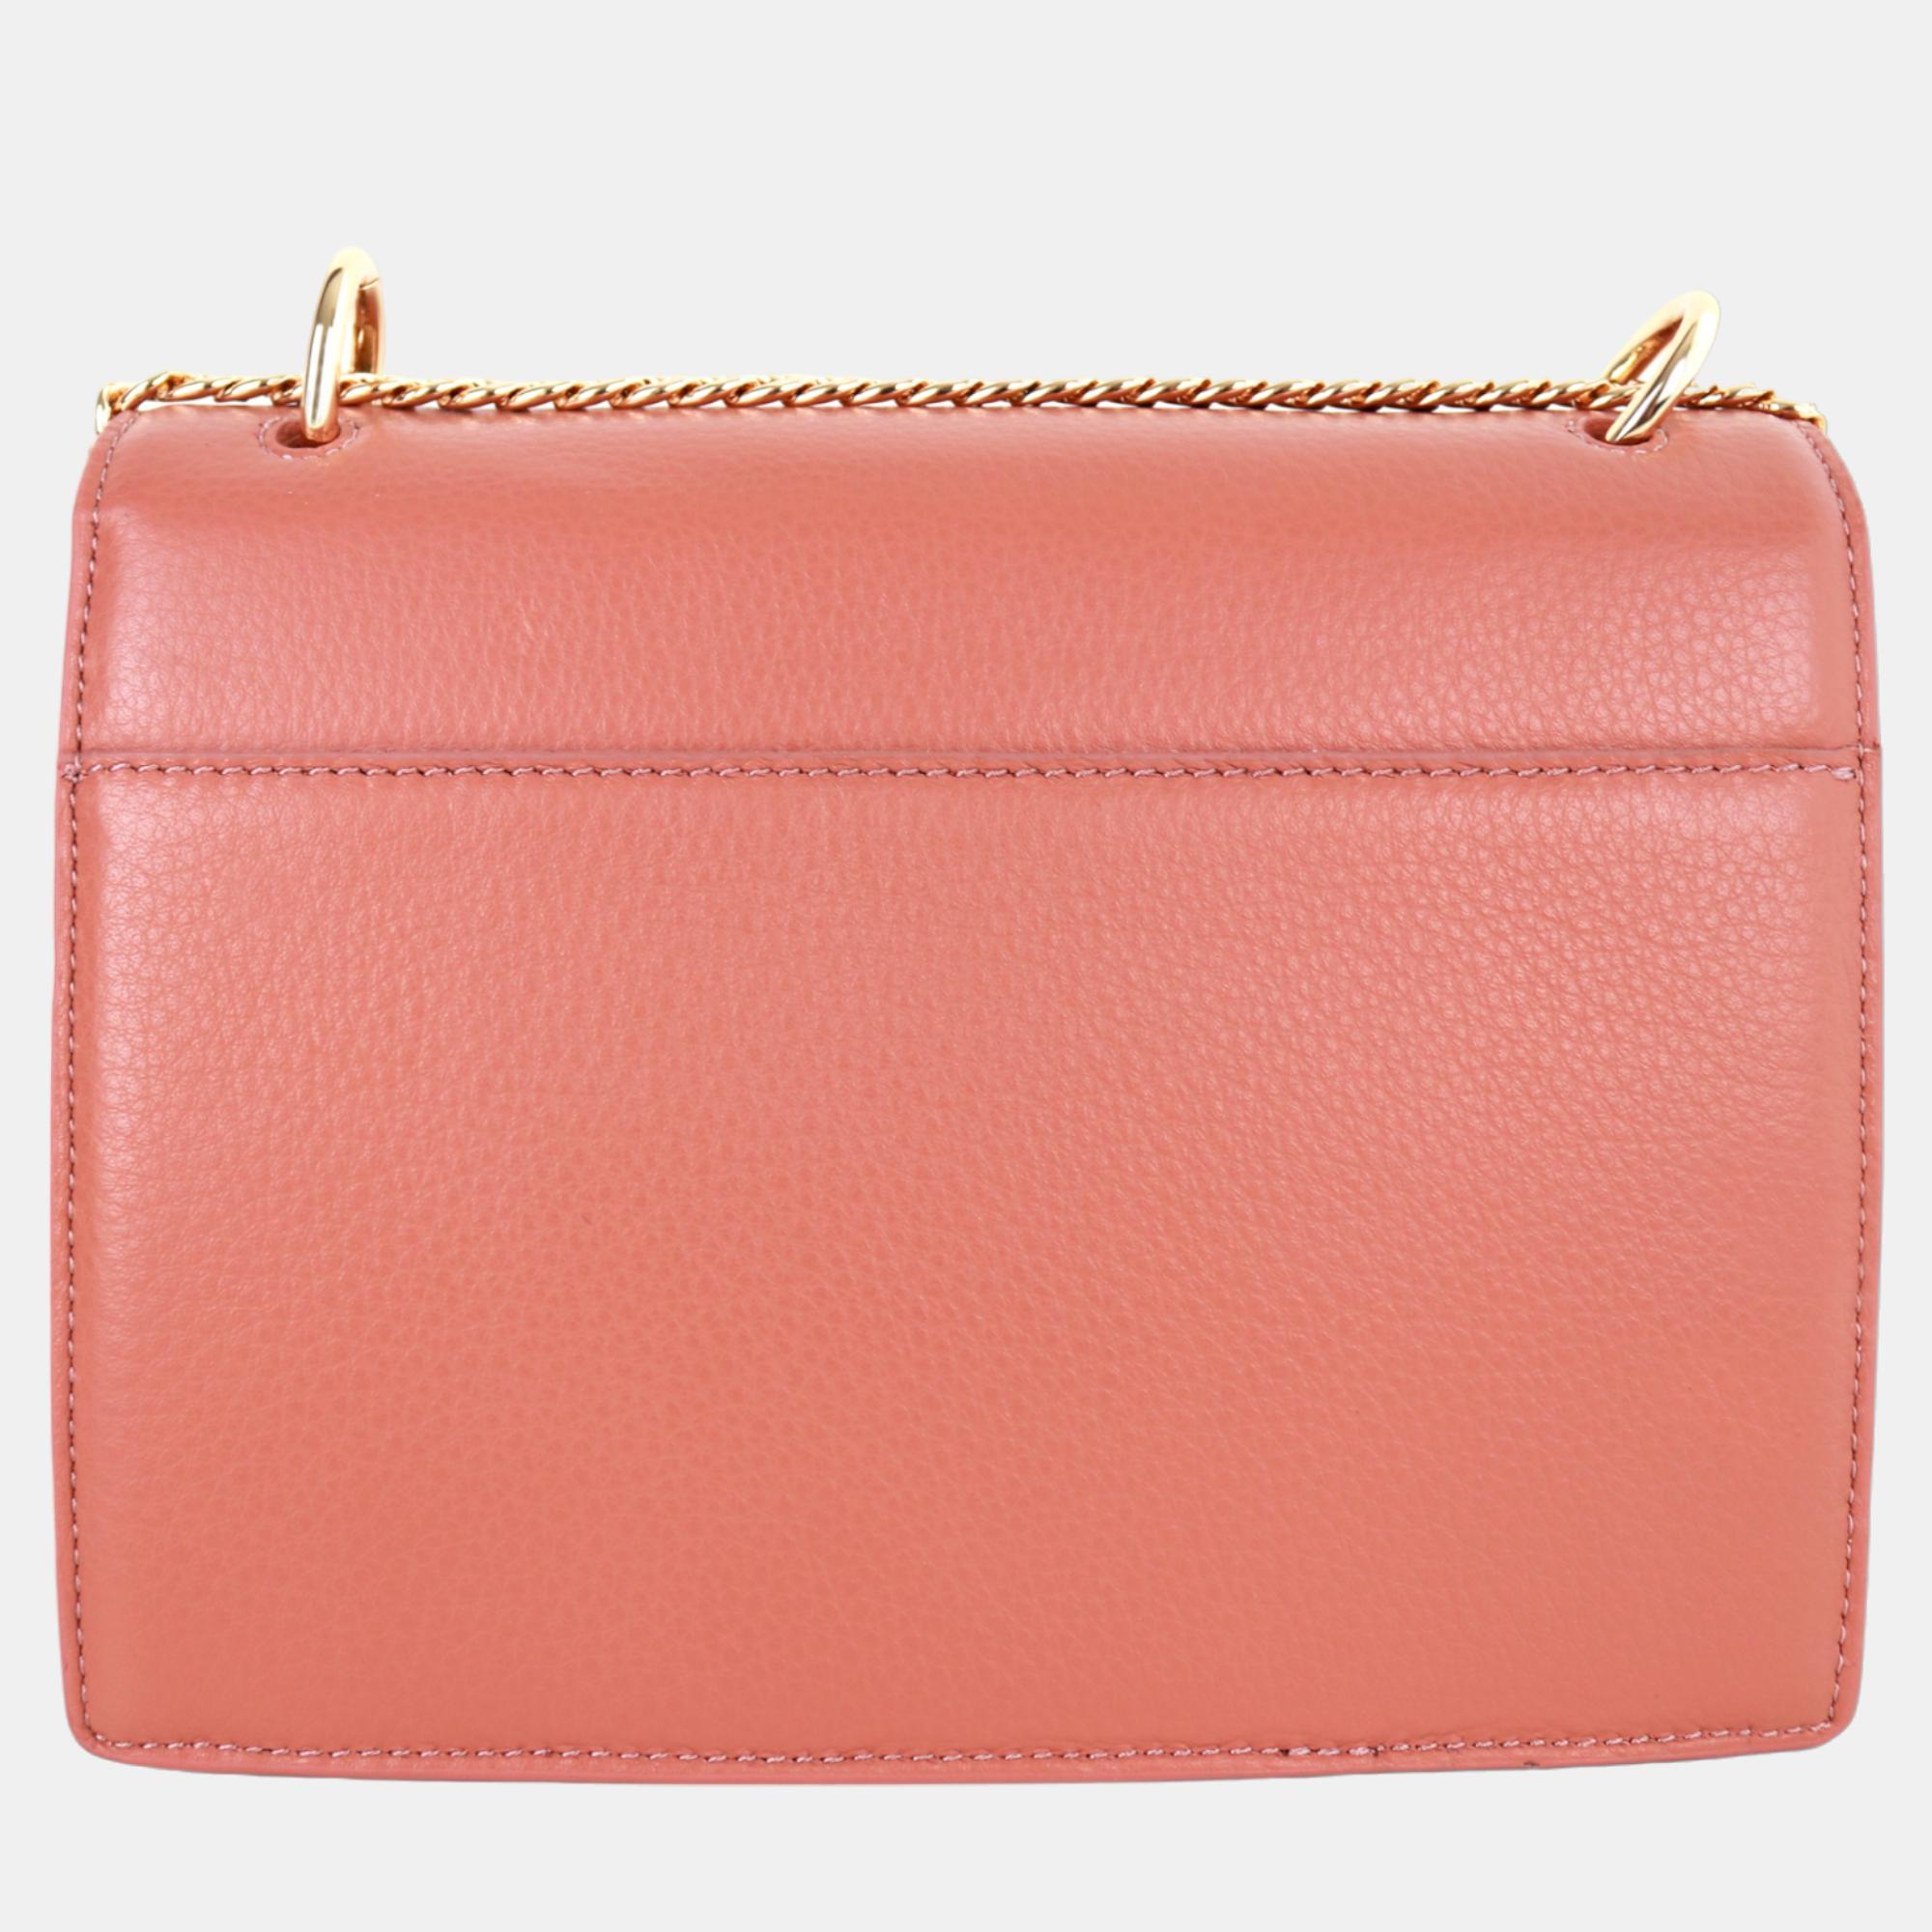 Charriol Light Brown Leather Forever Handbag